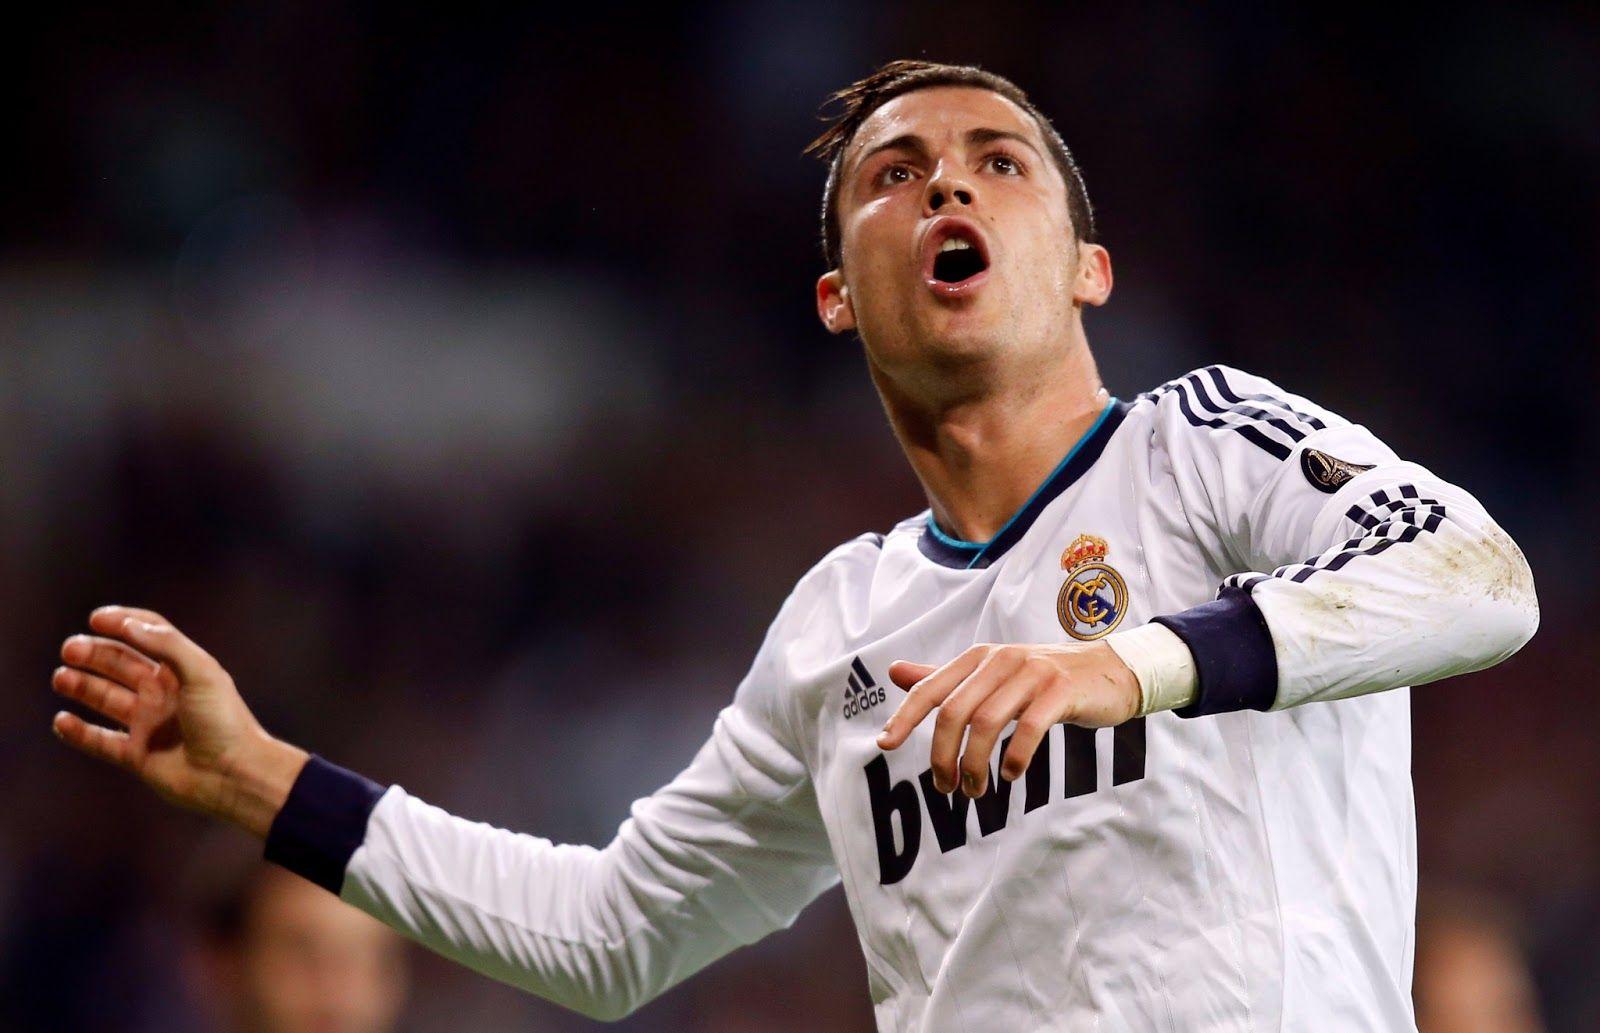 Cristiano Ronaldo Celebrating A Goal Wallpaper Picture. Sports